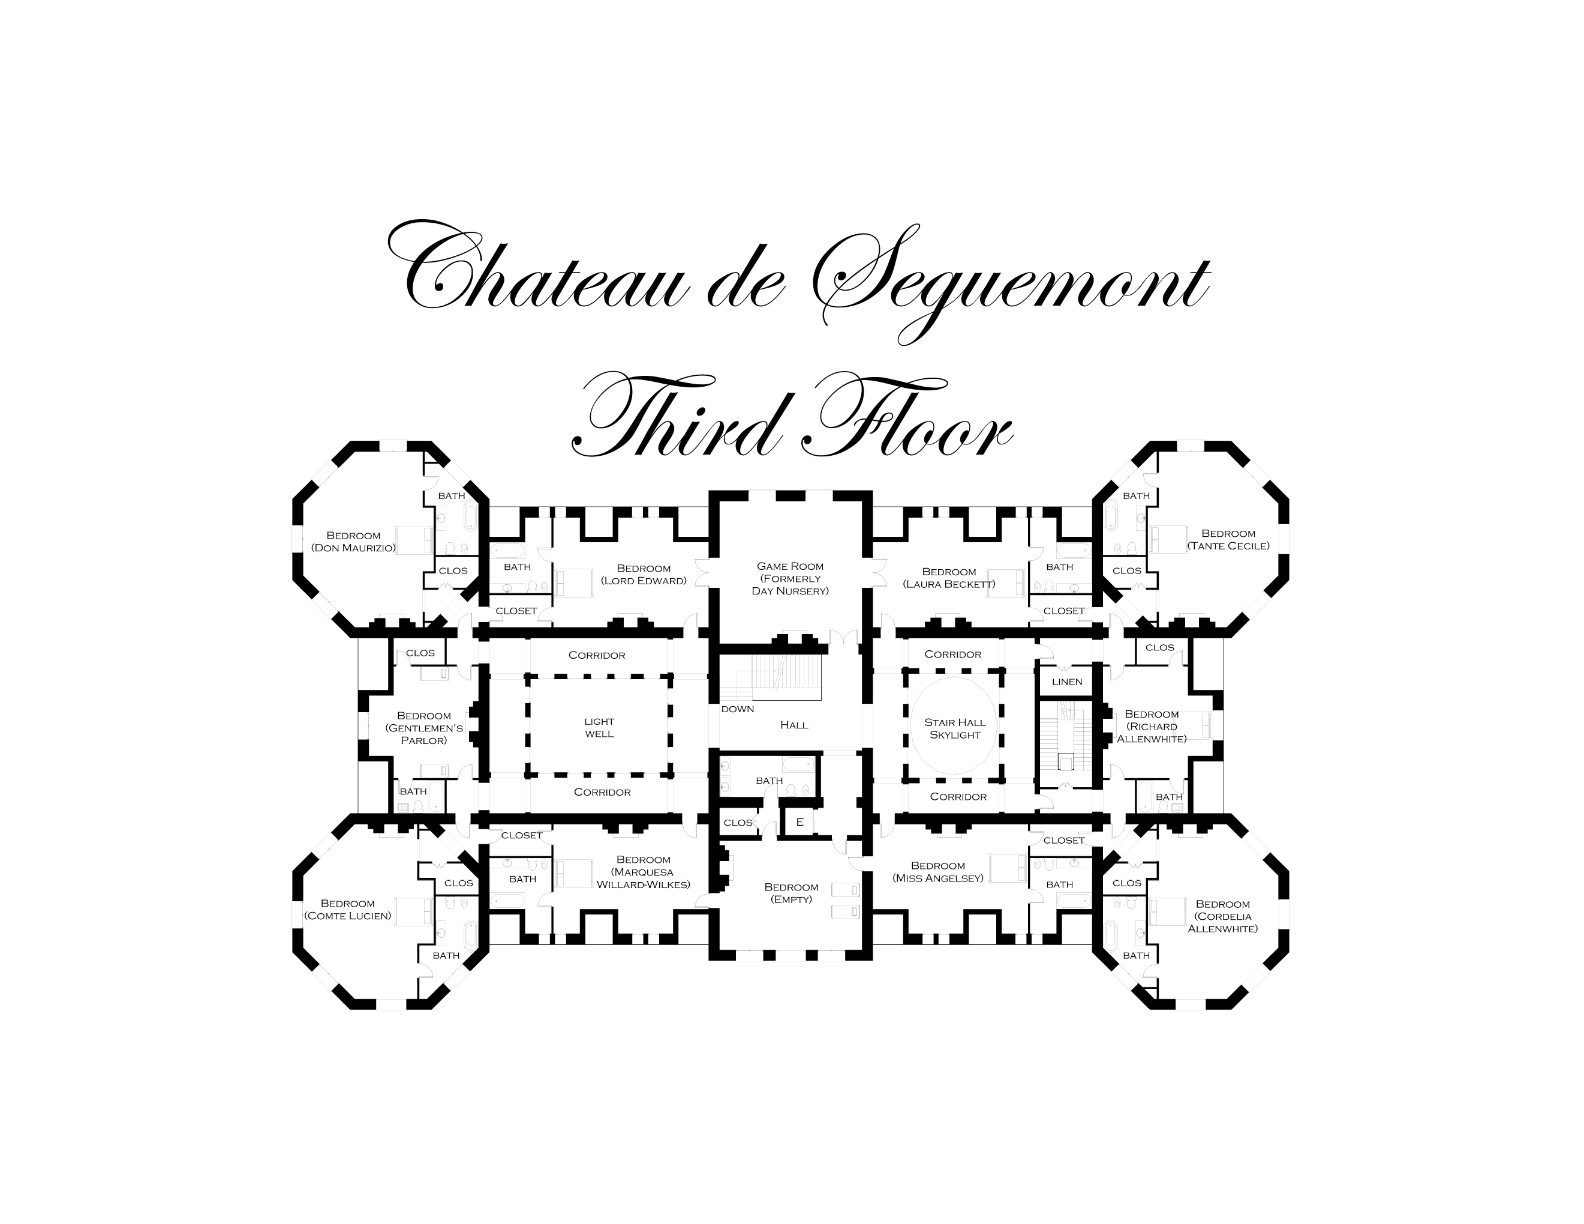 Encadré complémentaire Château Blanc zustazschloss türsicherung encadré château chaine 